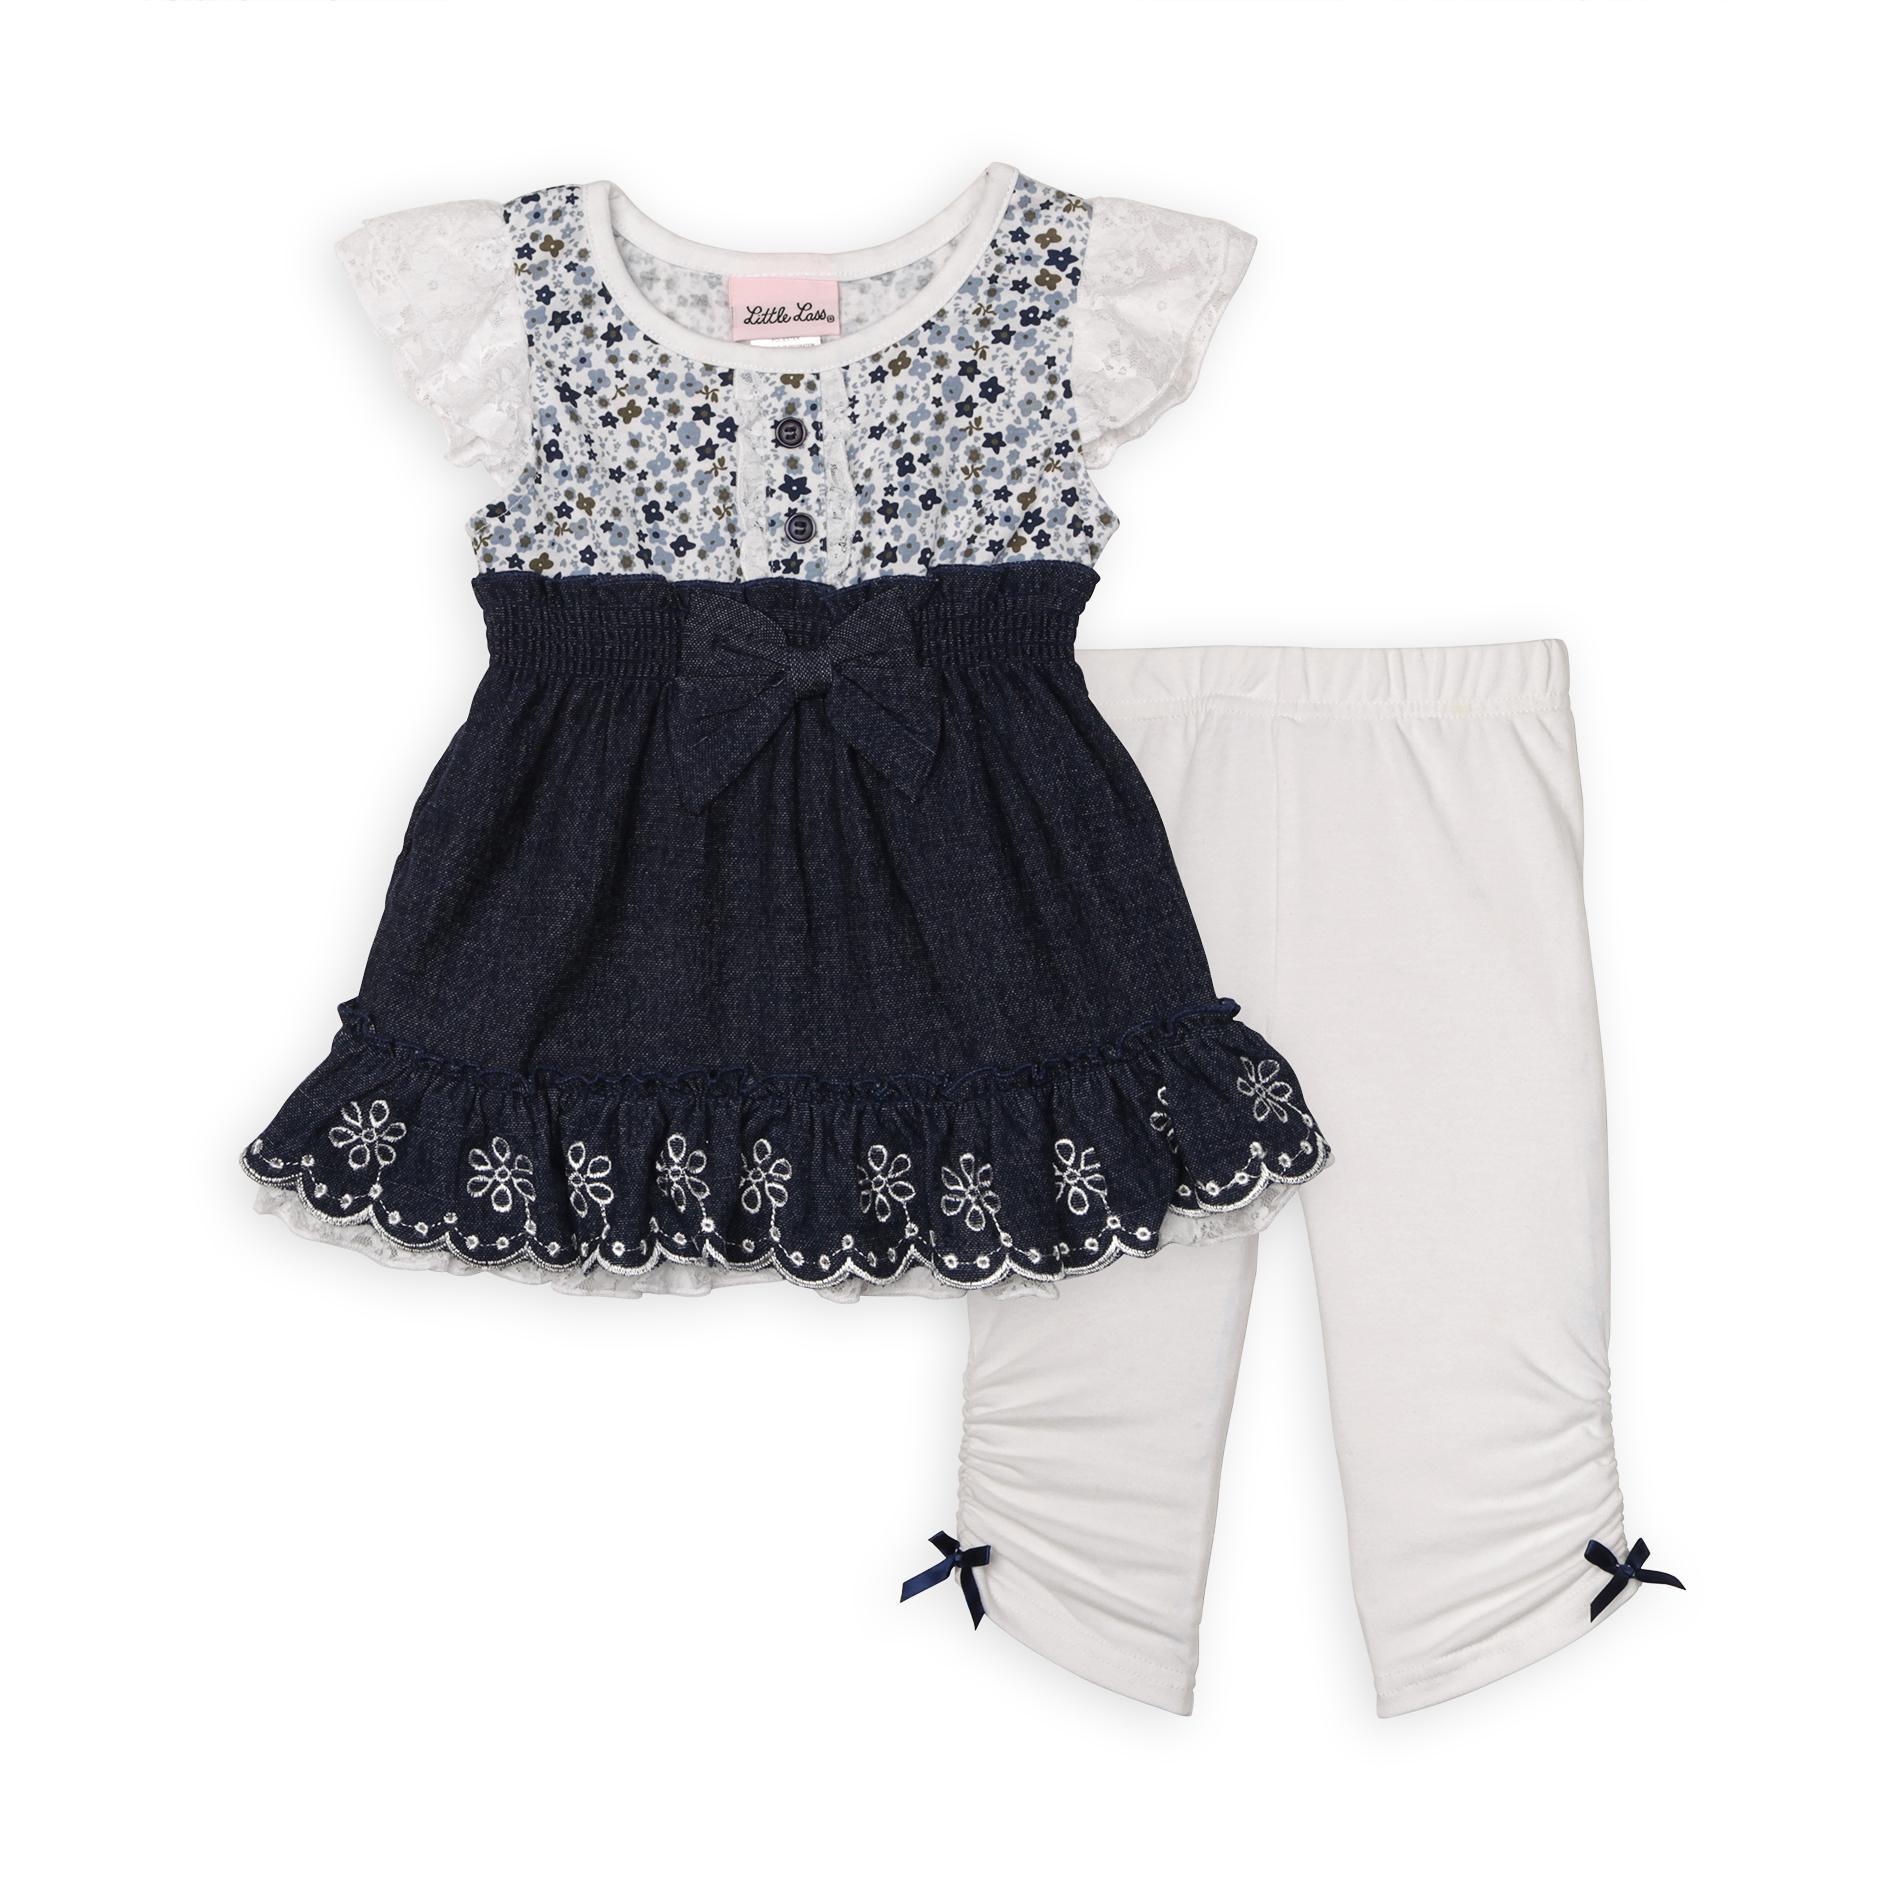 Little Lass Infant & Toddler Girl's Tunic & Leggings - Floral